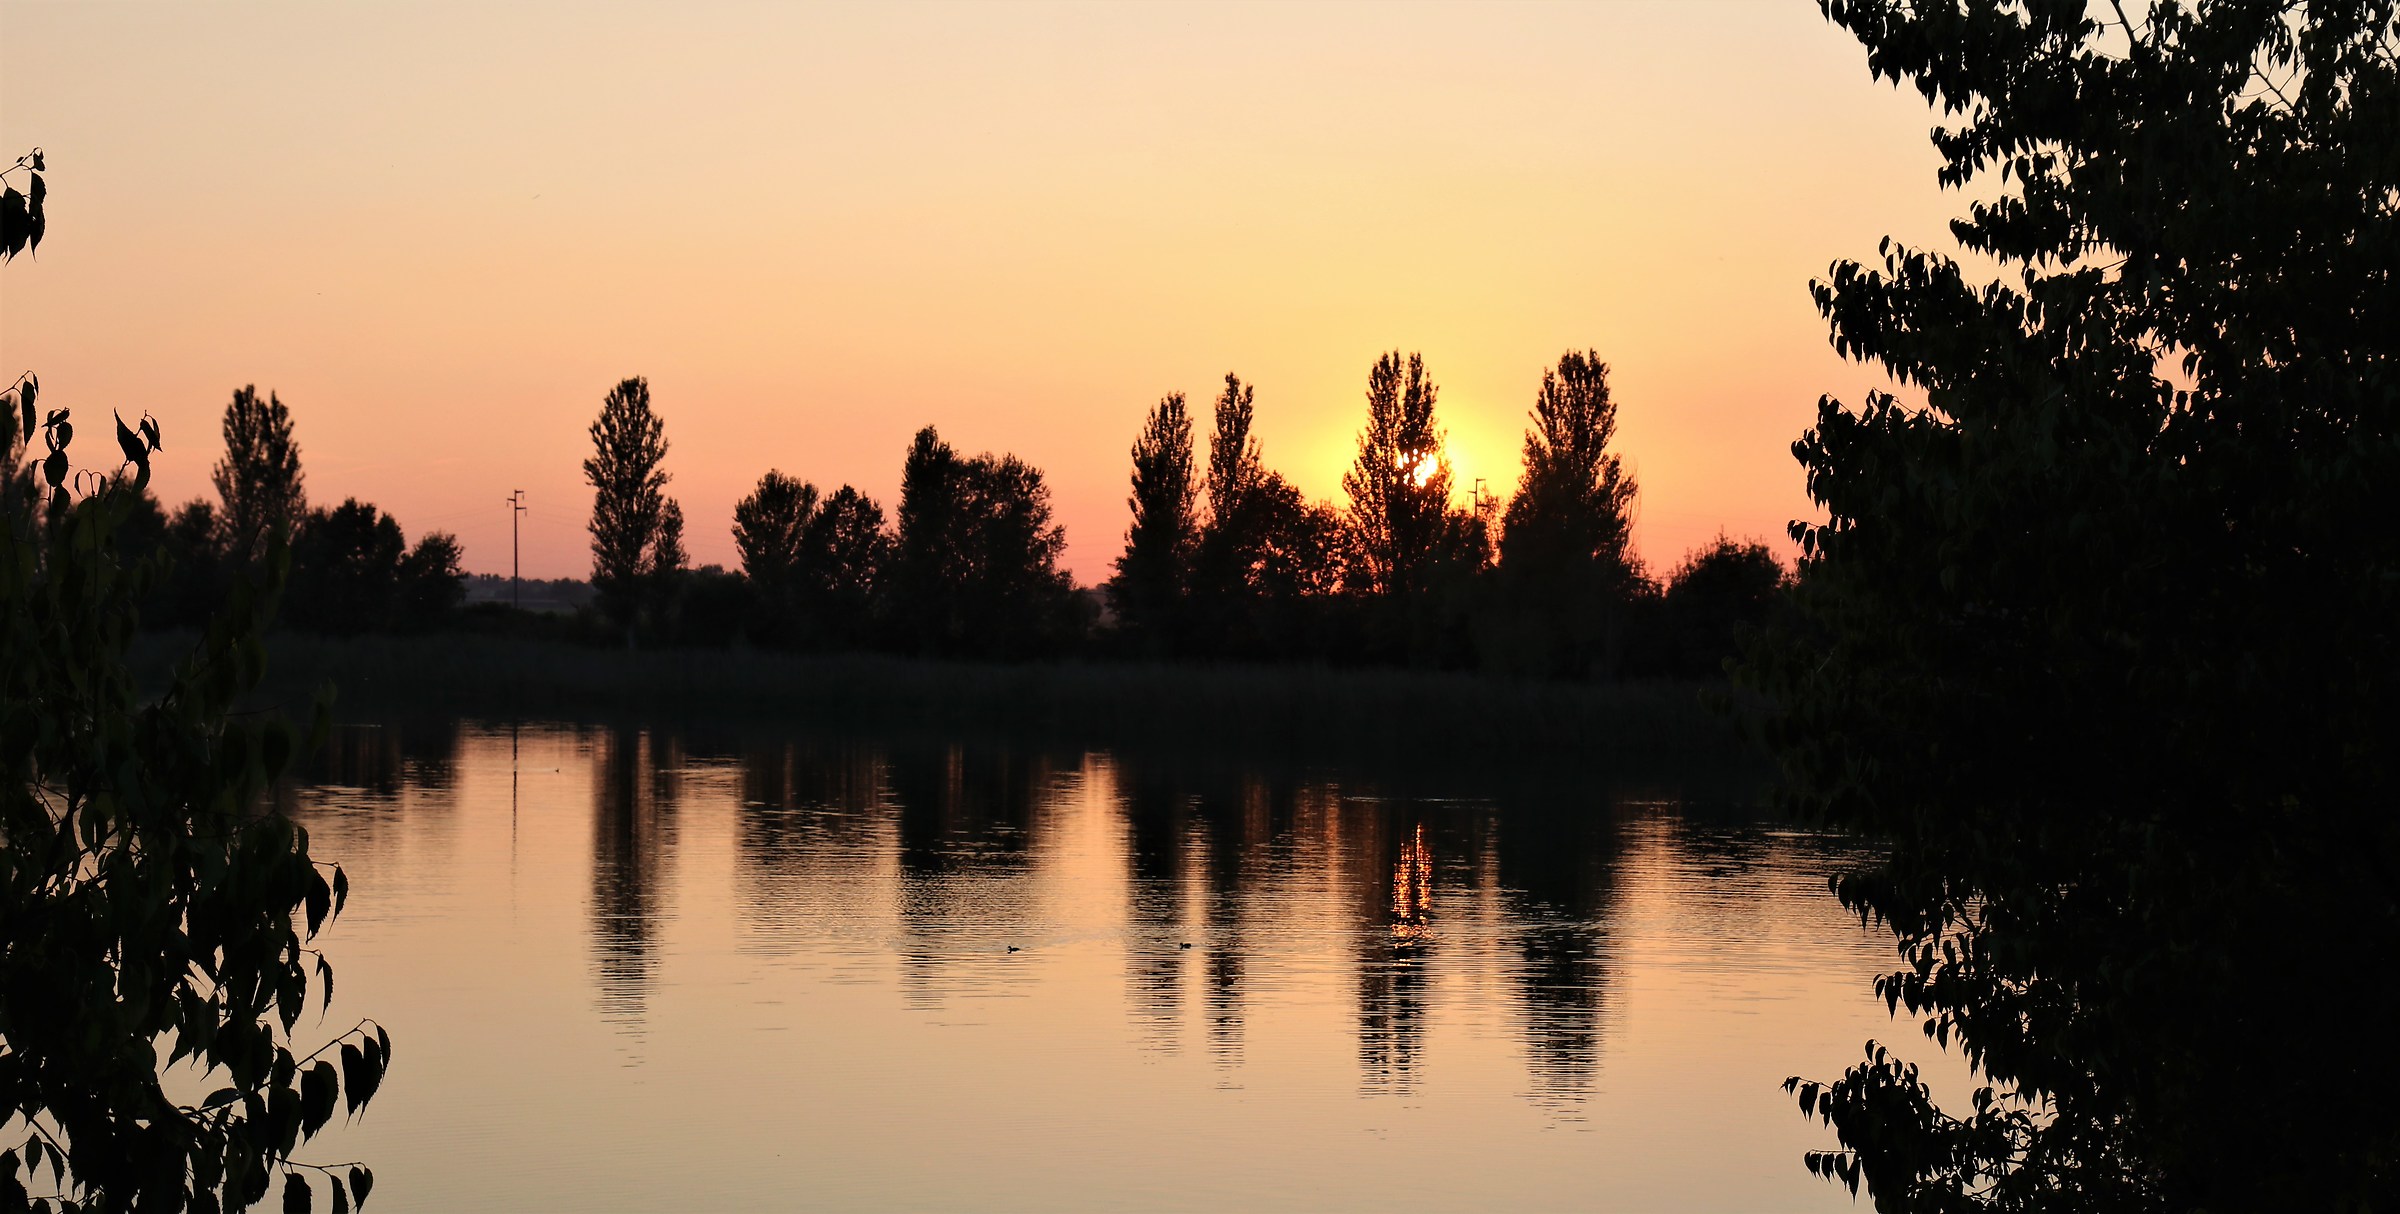 Pond at sunset...